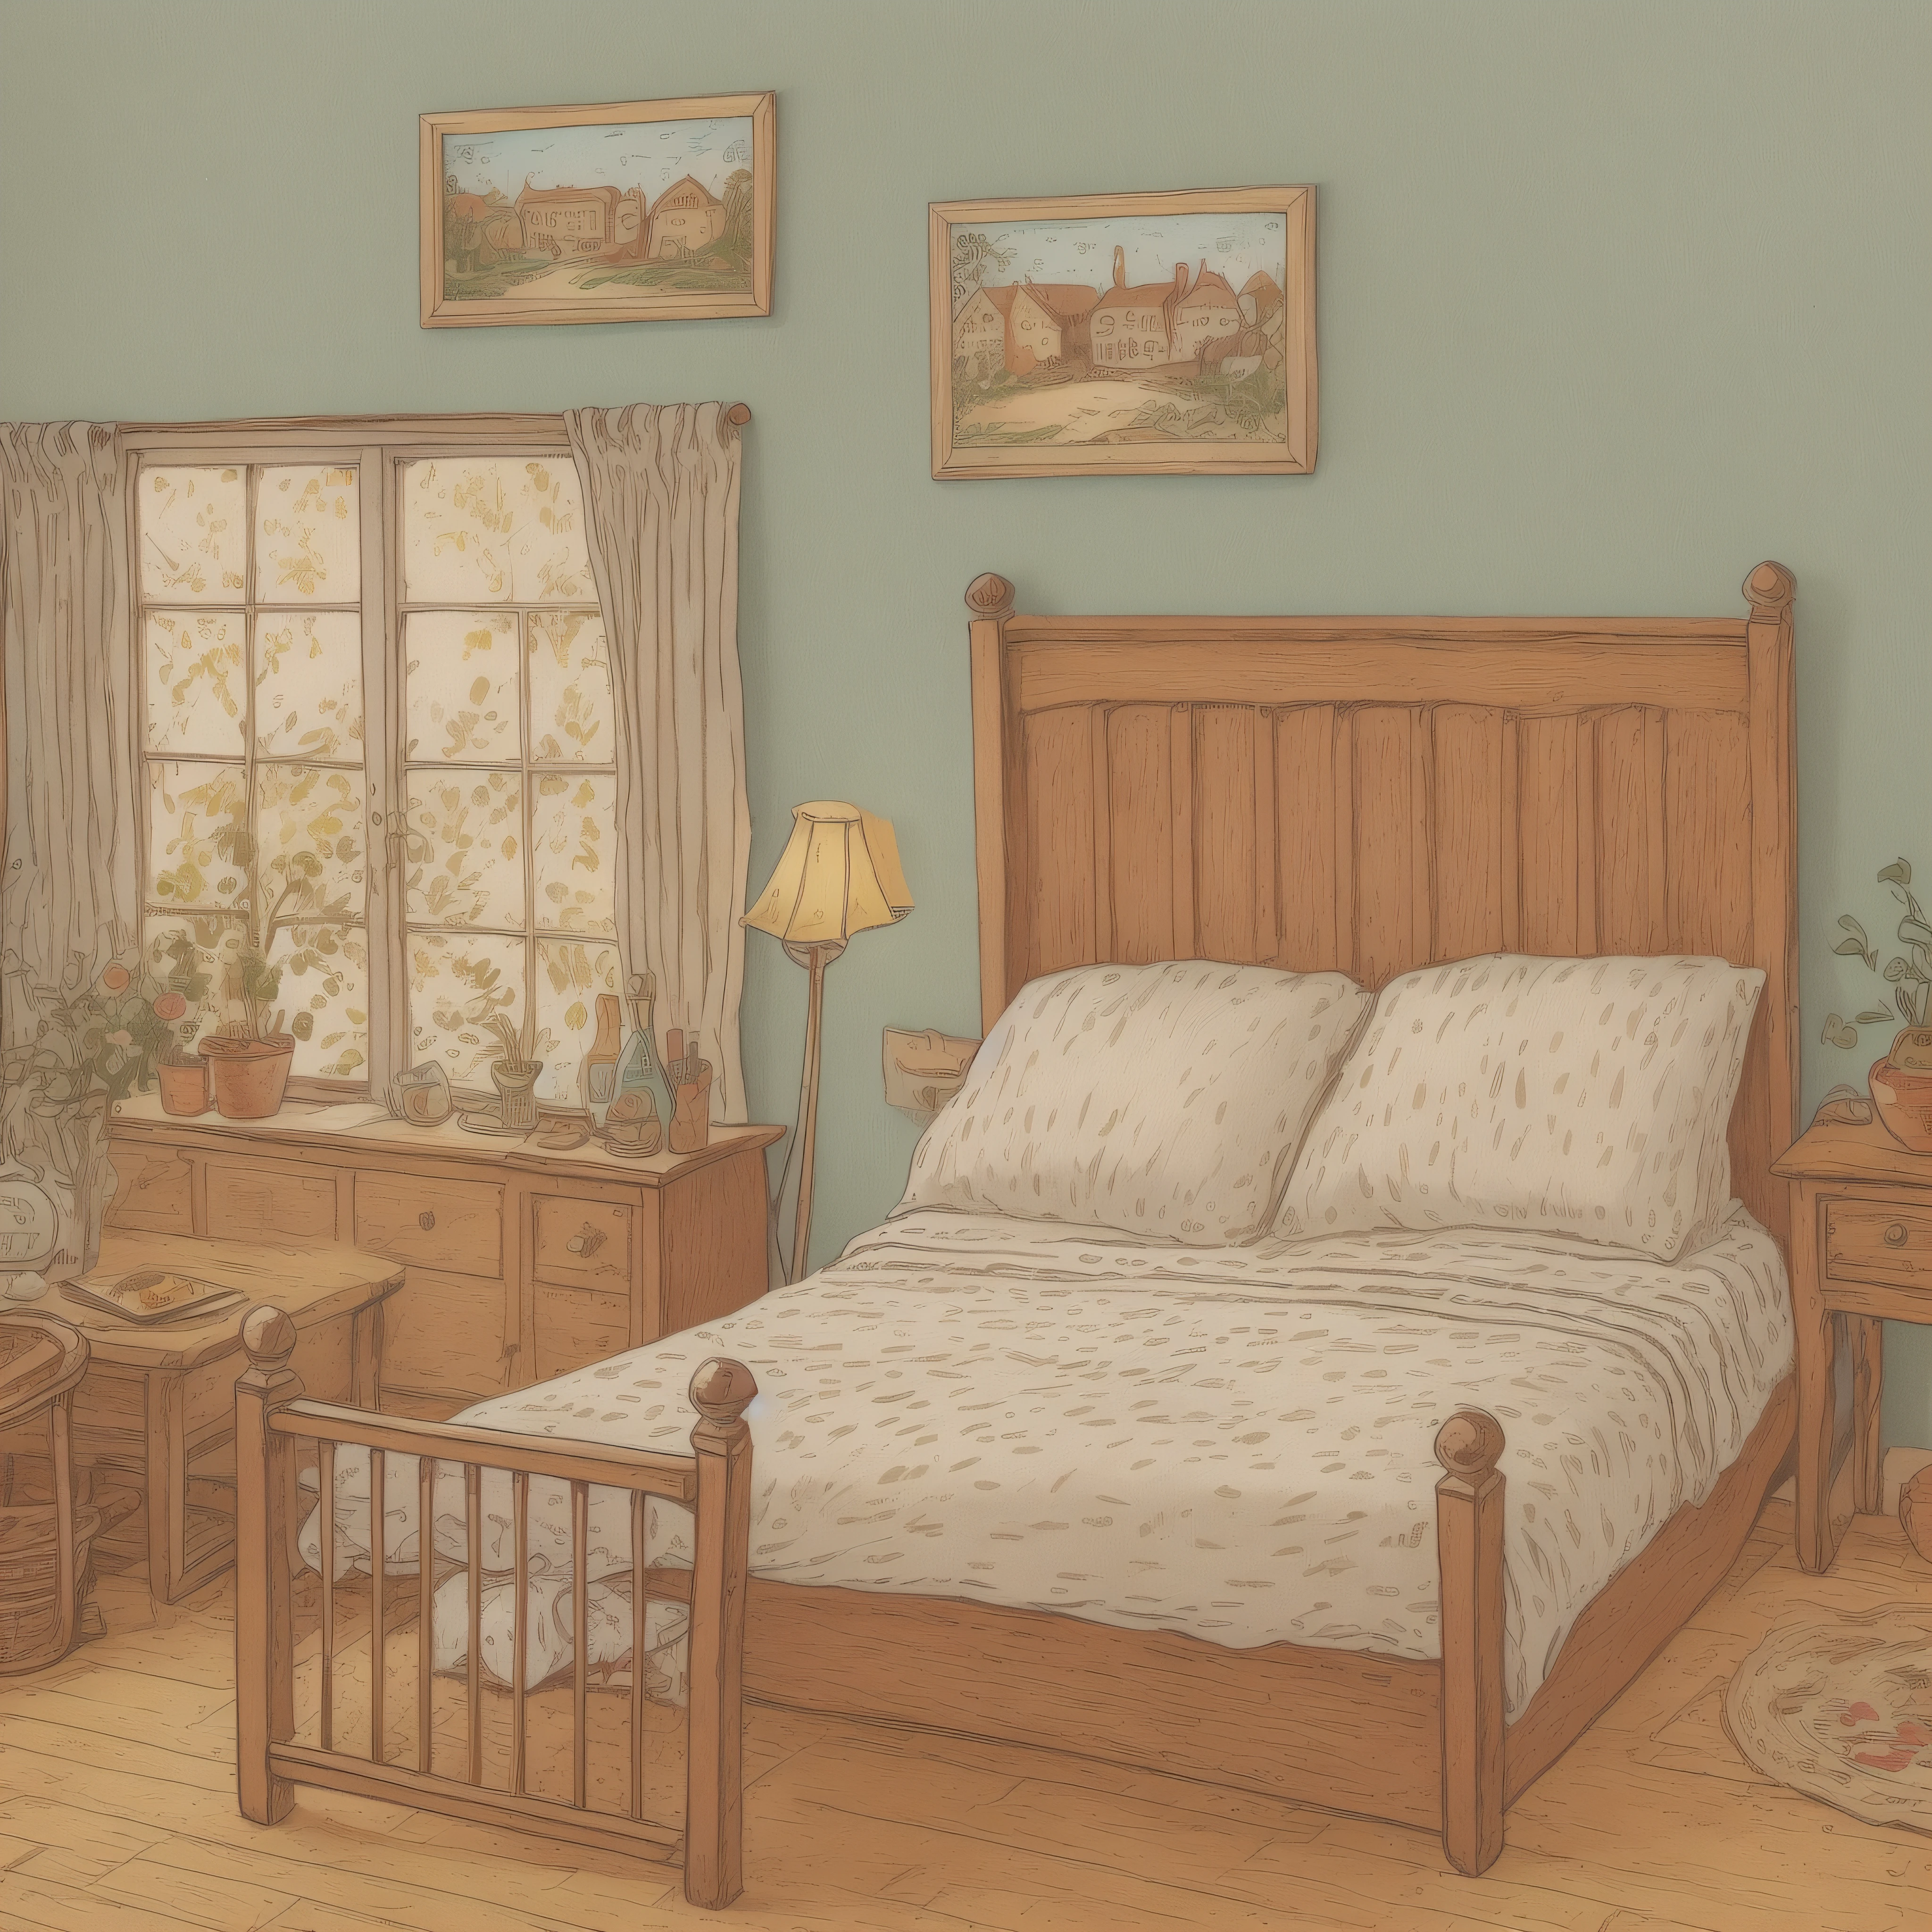 Иллюстрация детской книжки с картинками, две кровати в деревенской гостинице, Установка изображения, милый, Цветная иллюстрация, композиционный материал, красочный цвет, Франция 18 века,